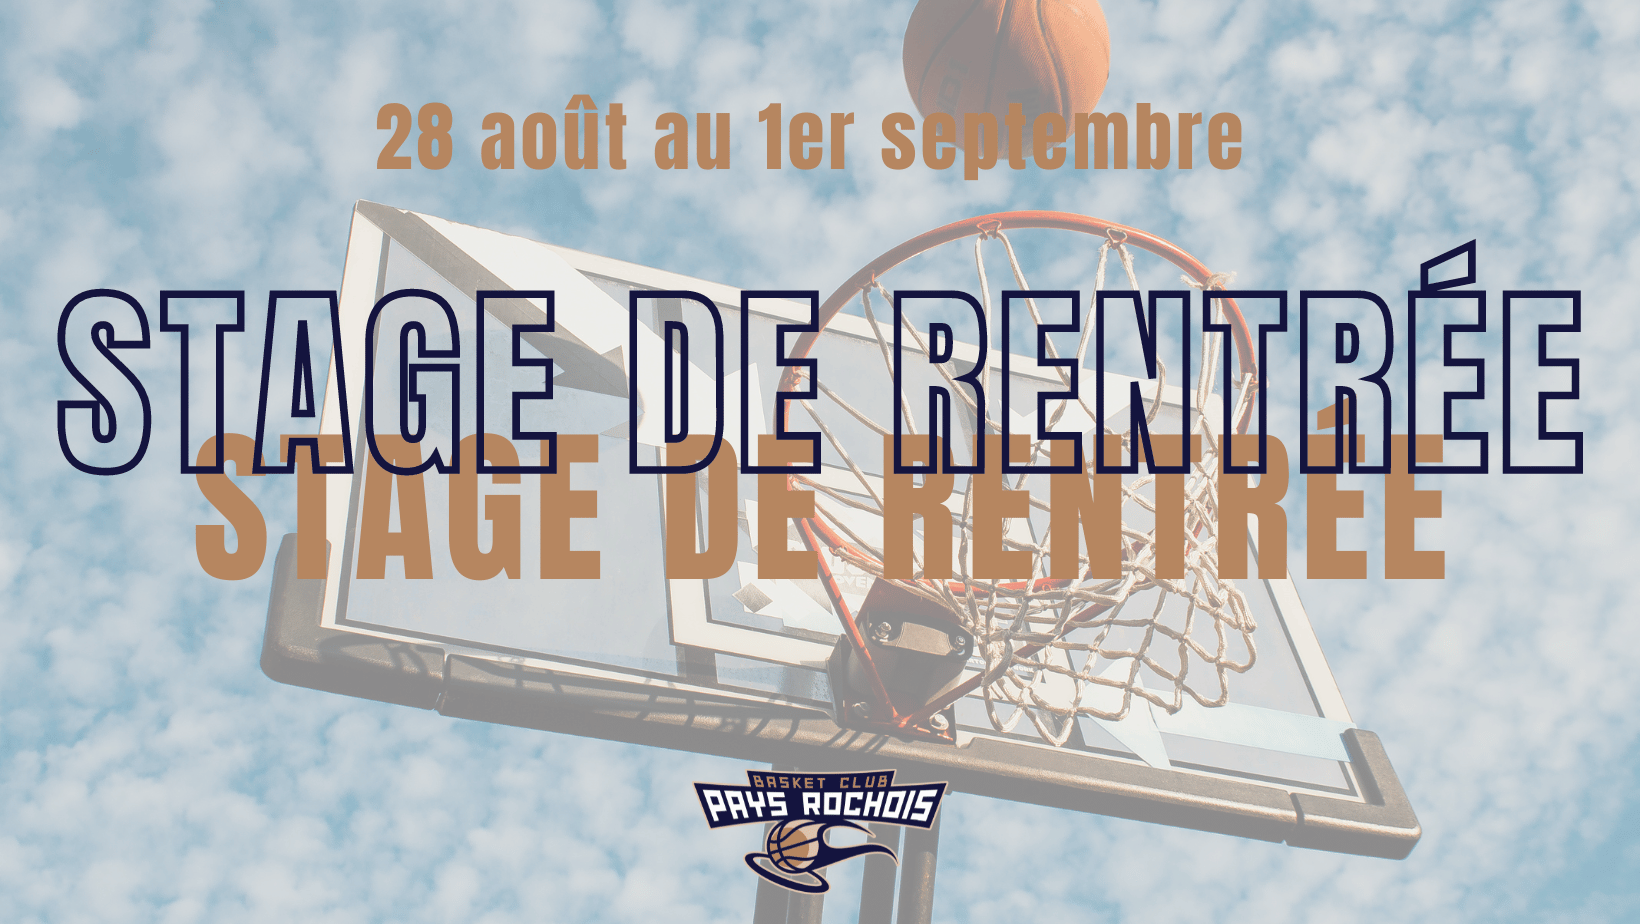 STAGE DE RENTRÉE basket club pays rochois